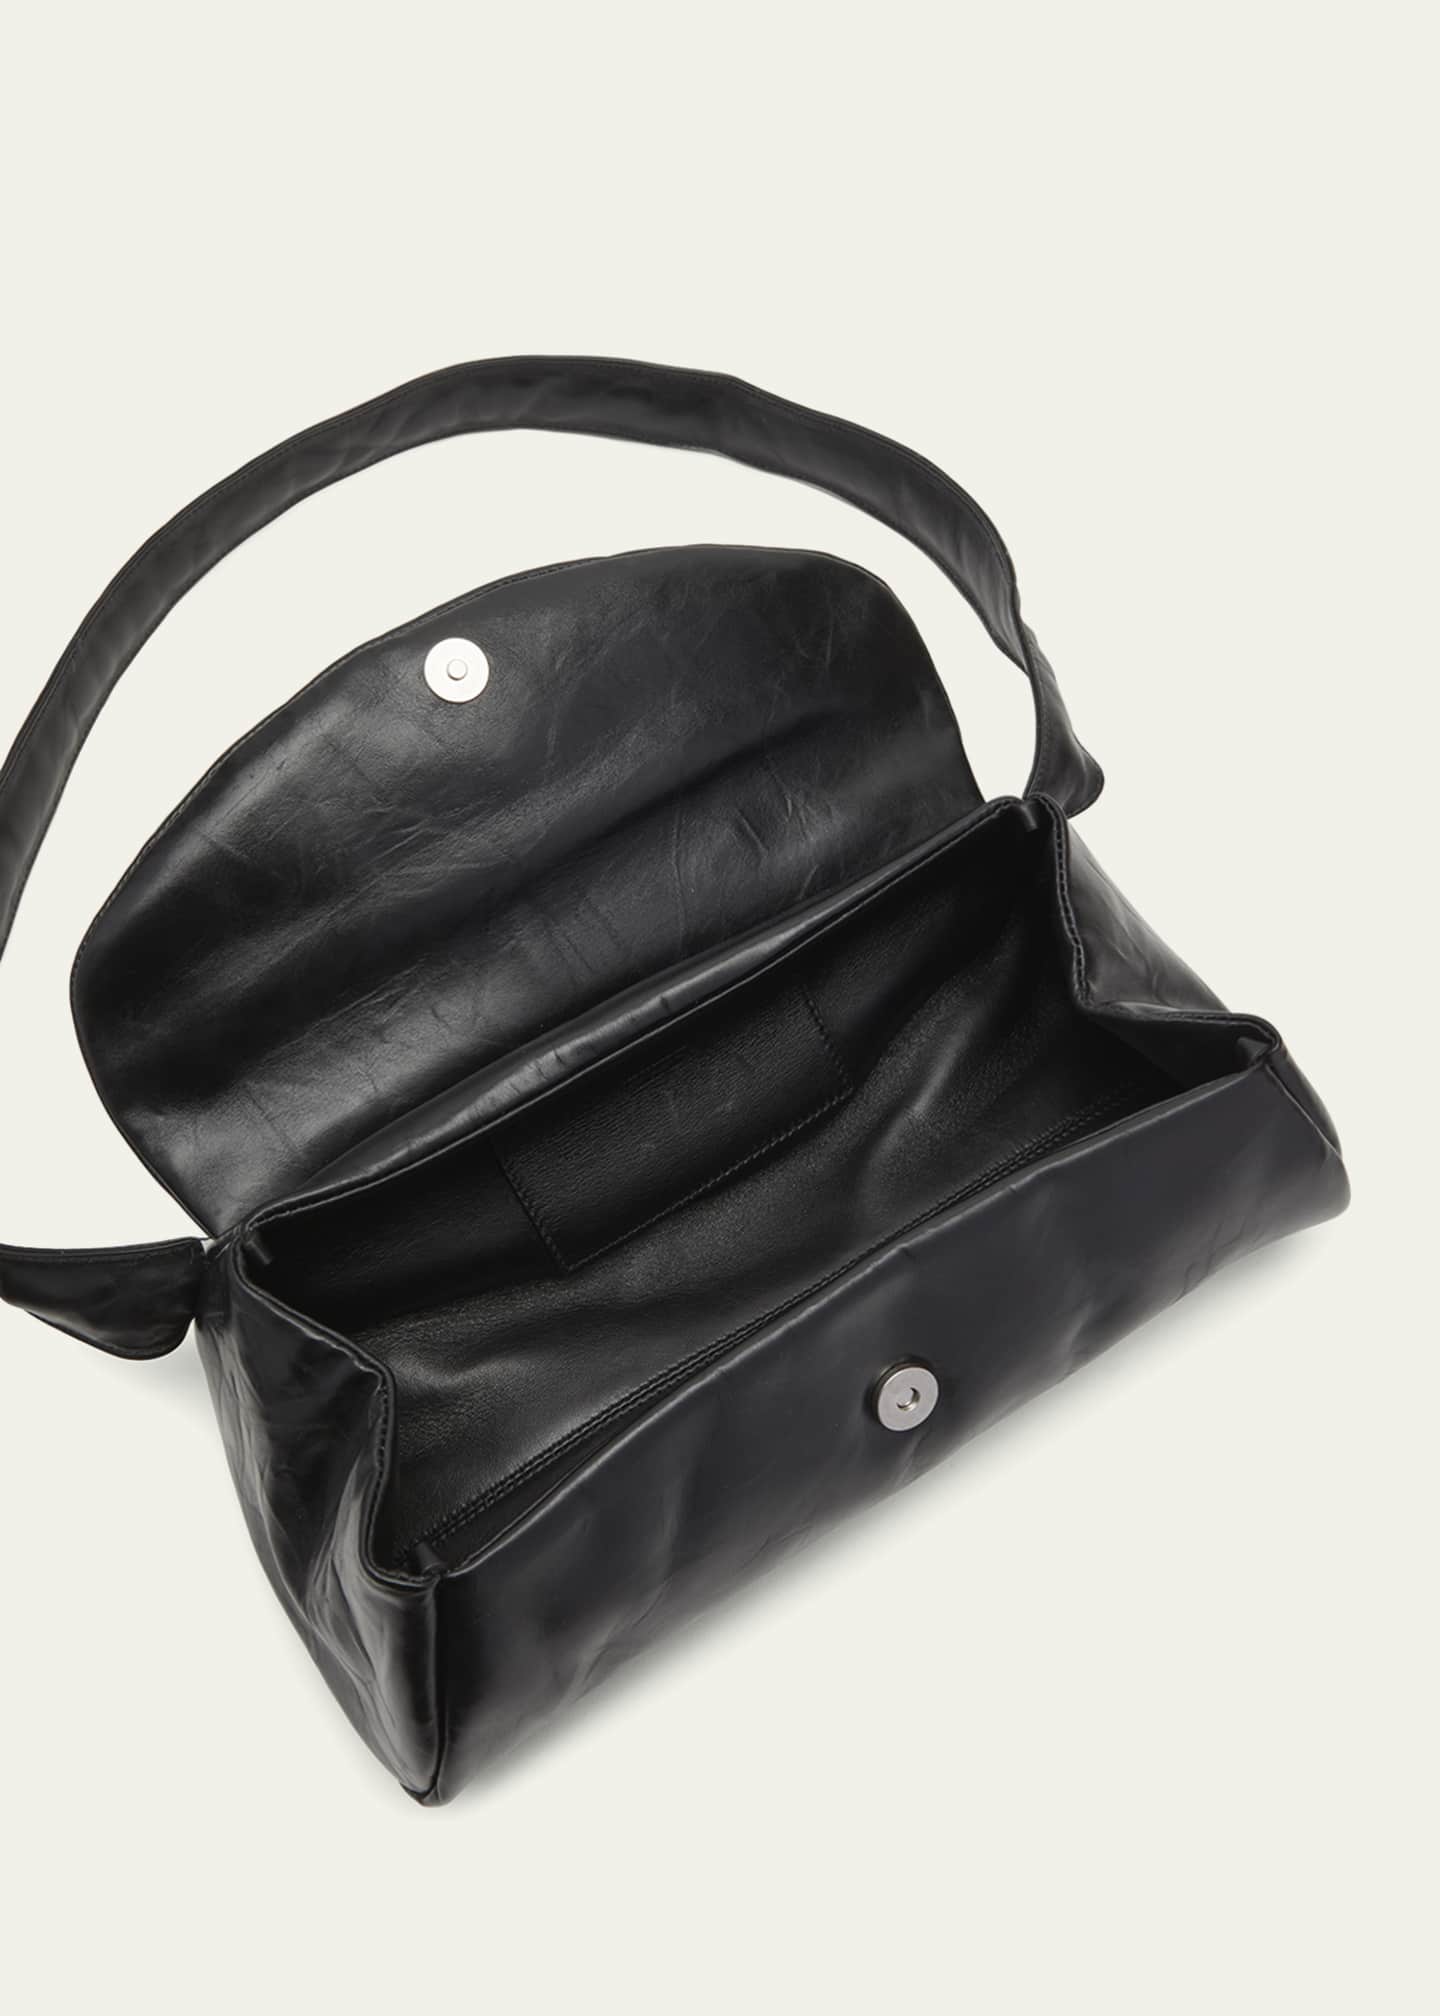 Jil Sander Cannolo Foldover Small Shoulder Bag - ShopStyle